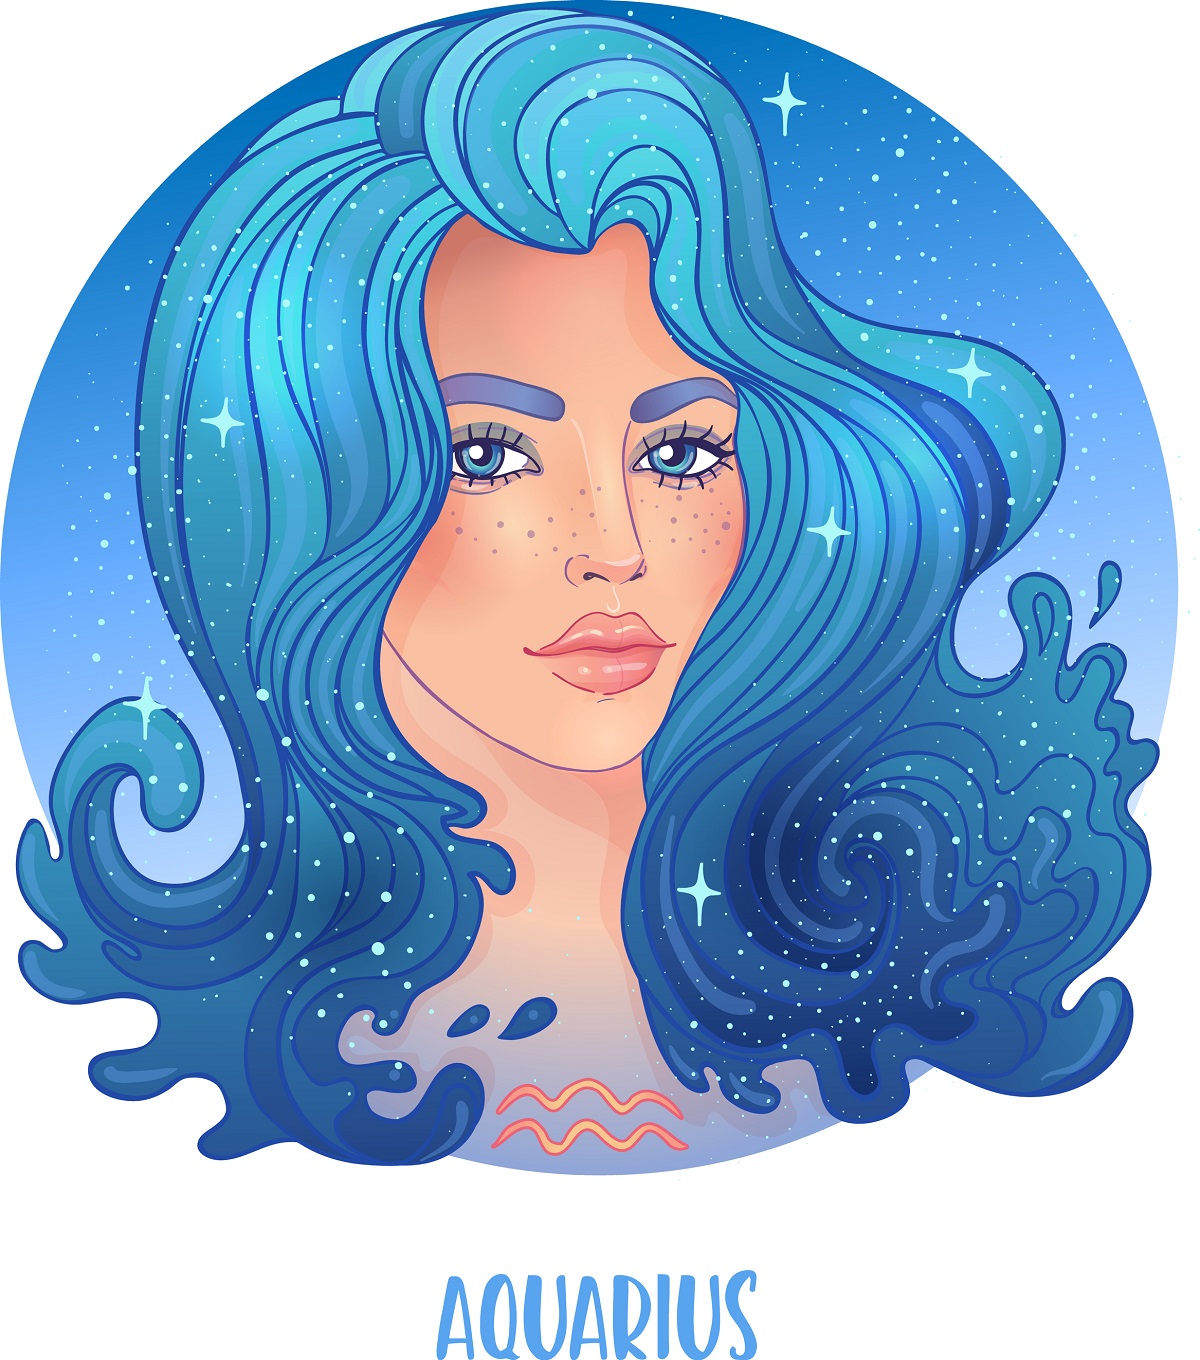 O femeie frumoasă cu părul foarte lung și albastru care este o reprezentare a zodiei Vărsătorului